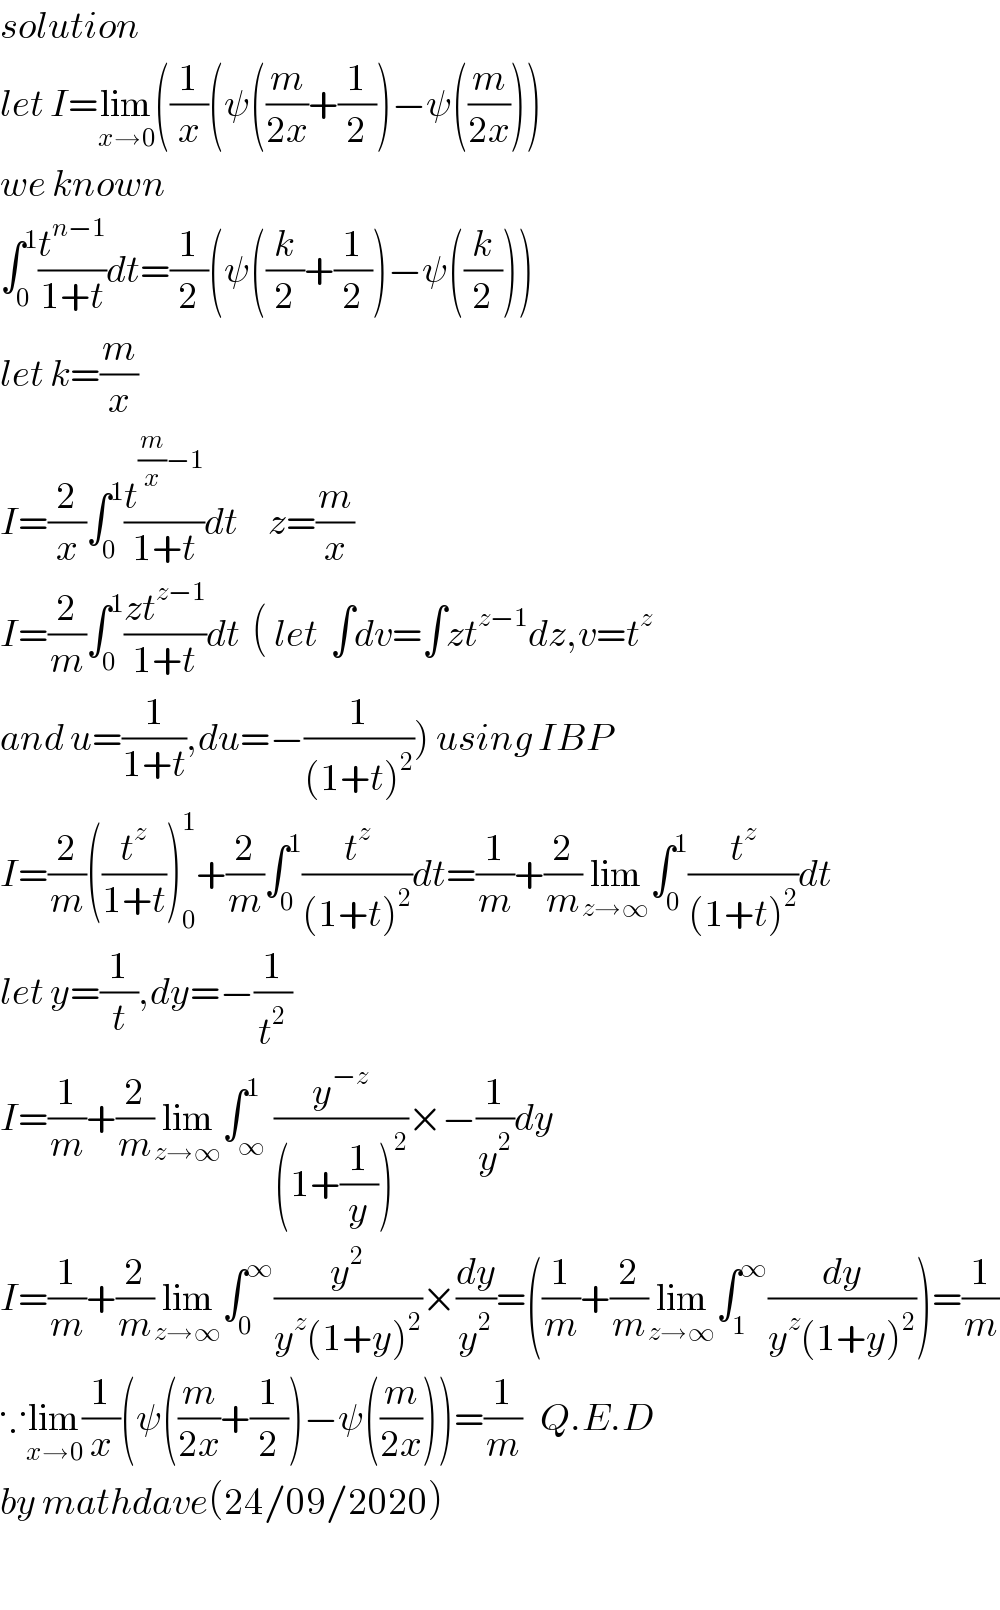 solution  let I=lim_(x→0) ((1/x)(ψ((m/(2x))+(1/2))−ψ((m/(2x))))  we known  ∫_0 ^1 (t^(n−1) /(1+t))dt=(1/2)(ψ((k/2)+(1/2))−ψ((k/2)))  let k=(m/x)  I=(2/x)∫_0 ^1 (t^((m/x)−1) /(1+t))dt     z=(m/x)  I=(2/m)∫_0 ^1 ((zt^(z−1) )/(1+t))dt  ( let  ∫dv=∫zt^(z−1) dz,v=t^z    and u=(1/(1+t)),du=−(1/((1+t)^2 ))) using IBP  I=(2/m)((t^z /(1+t)))_0 ^1 +(2/m)∫_0 ^1 (t^z /((1+t)^2 ))dt=(1/m)+(2/m)lim_(z→∞) ∫_0 ^1 (t^z /((1+t)^2 ))dt  let y=(1/t),dy=−(1/t^2 )  I=(1/m)+(2/m)lim_(z→∞) ∫_∞ ^1 (y^(−z) /((1+(1/y))^2 ))×−(1/y^2 )dy  I=(1/m)+(2/m)lim_(z→∞) ∫_0 ^∞ (y^2 /(y^z (1+y)^2 ))×(dy/y^2 )=((1/m)+(2/m)lim_(z→∞) ∫_1 ^∞ (dy/(y^z (1+y)^2 )))=(1/m)  ∵lim_(x→0) (1/x)(ψ((m/(2x))+(1/2))−ψ((m/(2x))))=(1/m)   Q.E.D  by mathdave(24/09/2020)    